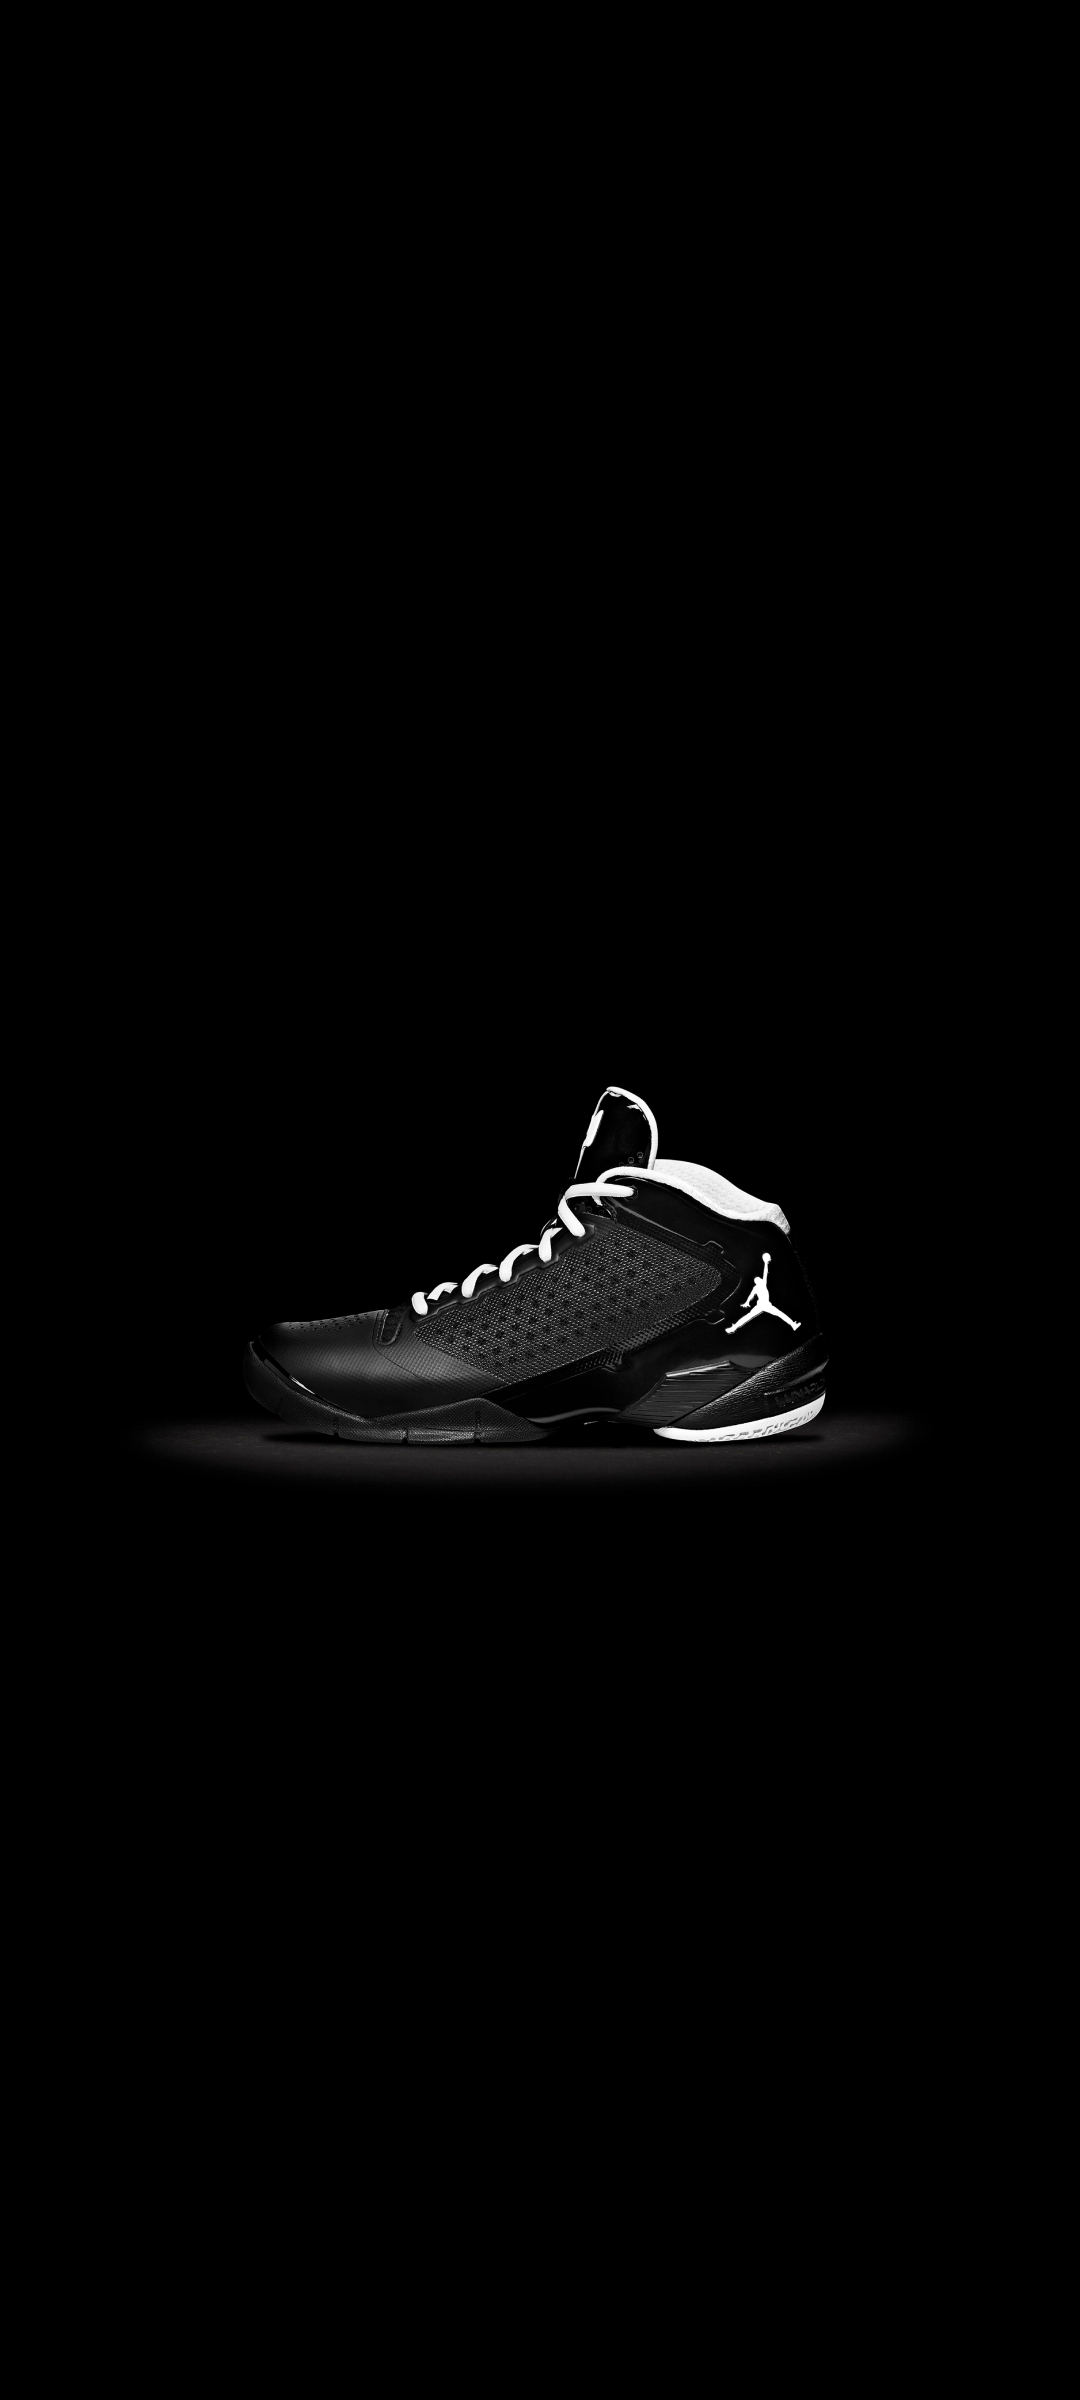 Nike 黒のジョーダン 靴 Galaxy A51 5g 壁紙 待ち受け スマラン